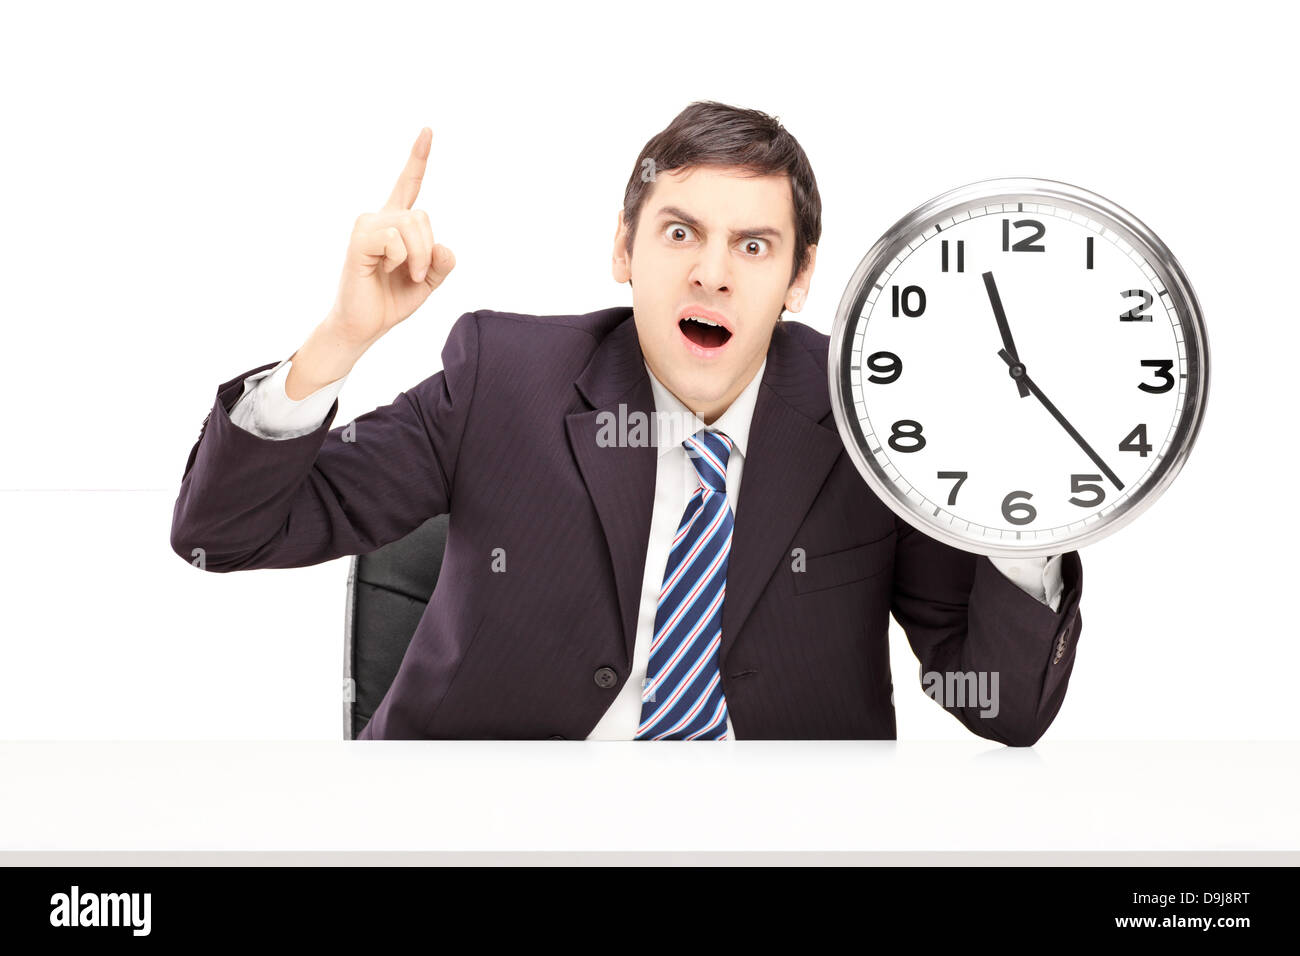 Angry businessman holding une horloge, isolé sur fond blanc Banque D'Images